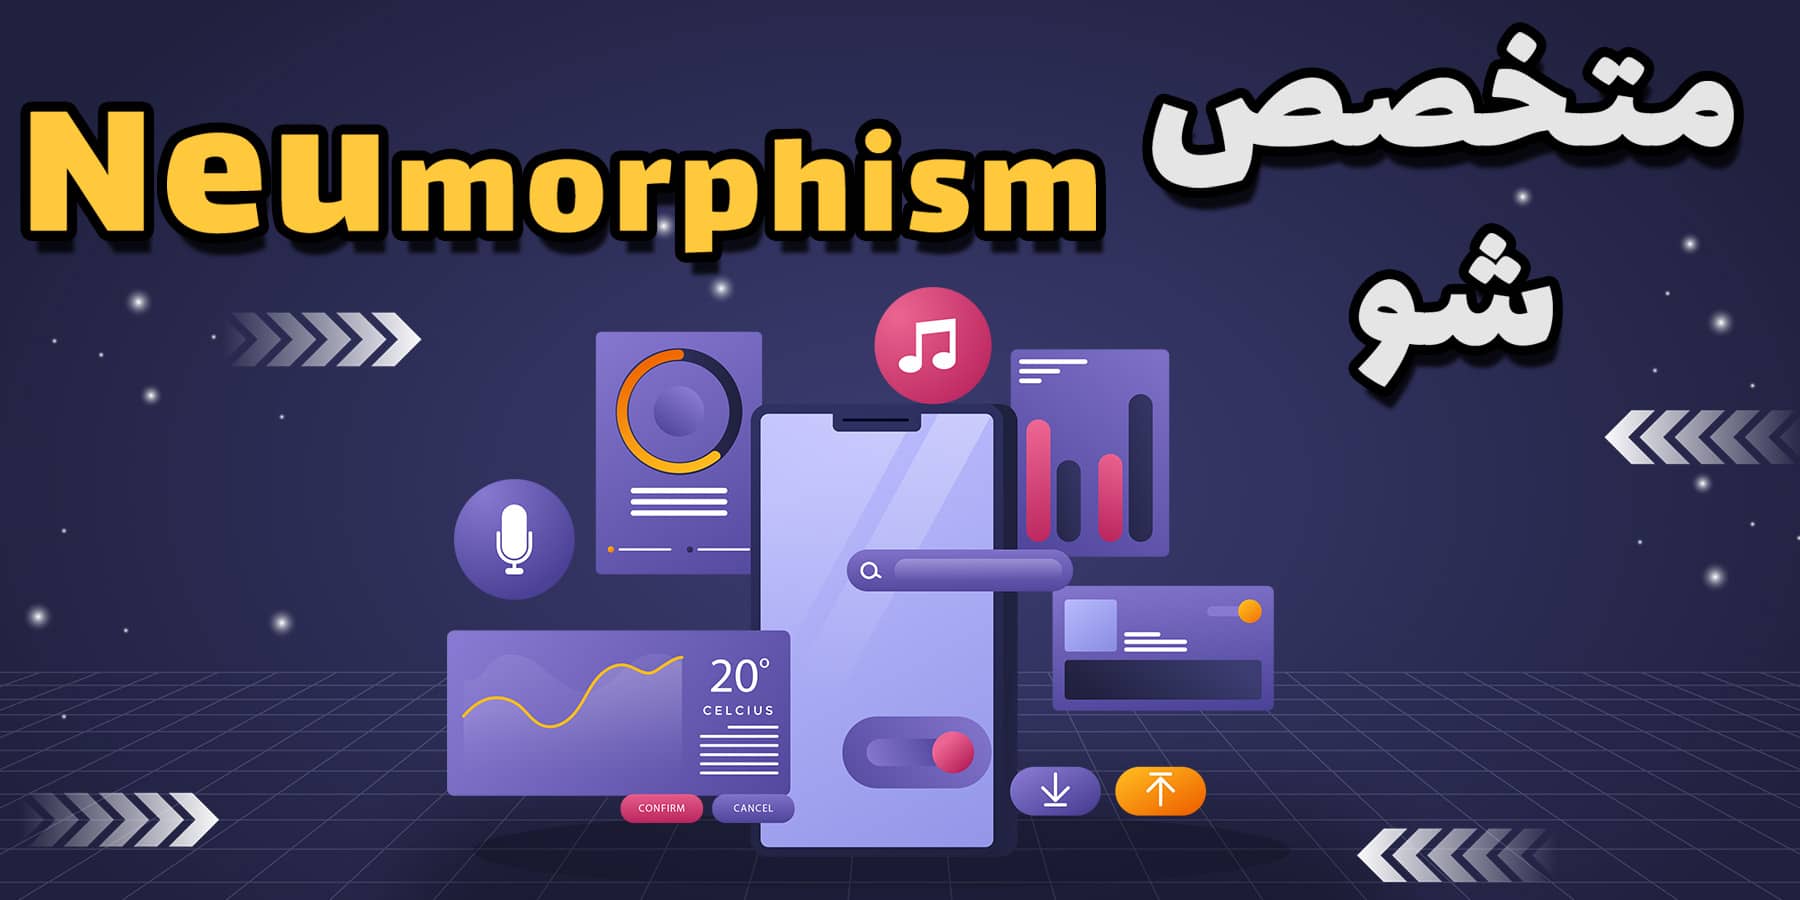 آموزش کامل و پروژه محور نئومورفیسم (Neumorphism) برای اندروید